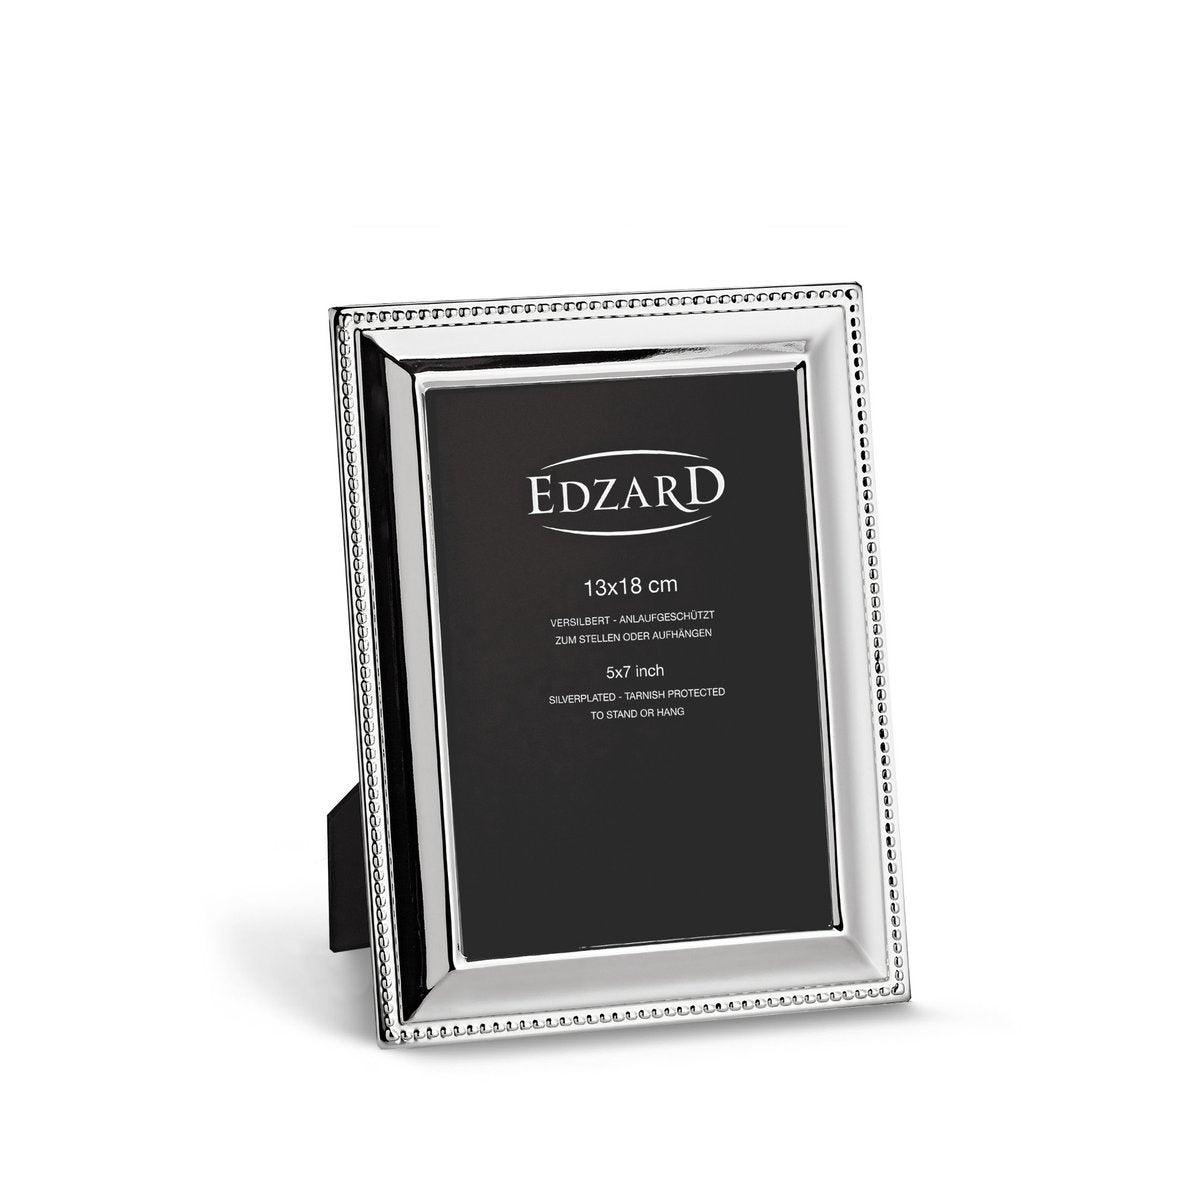 EDZARD Fotorahmen Perla für Foto 13 x 18 cm, edel versilbert, anlaufgeschützt, mit 2 Aufhängern - HomeDesign Knaus